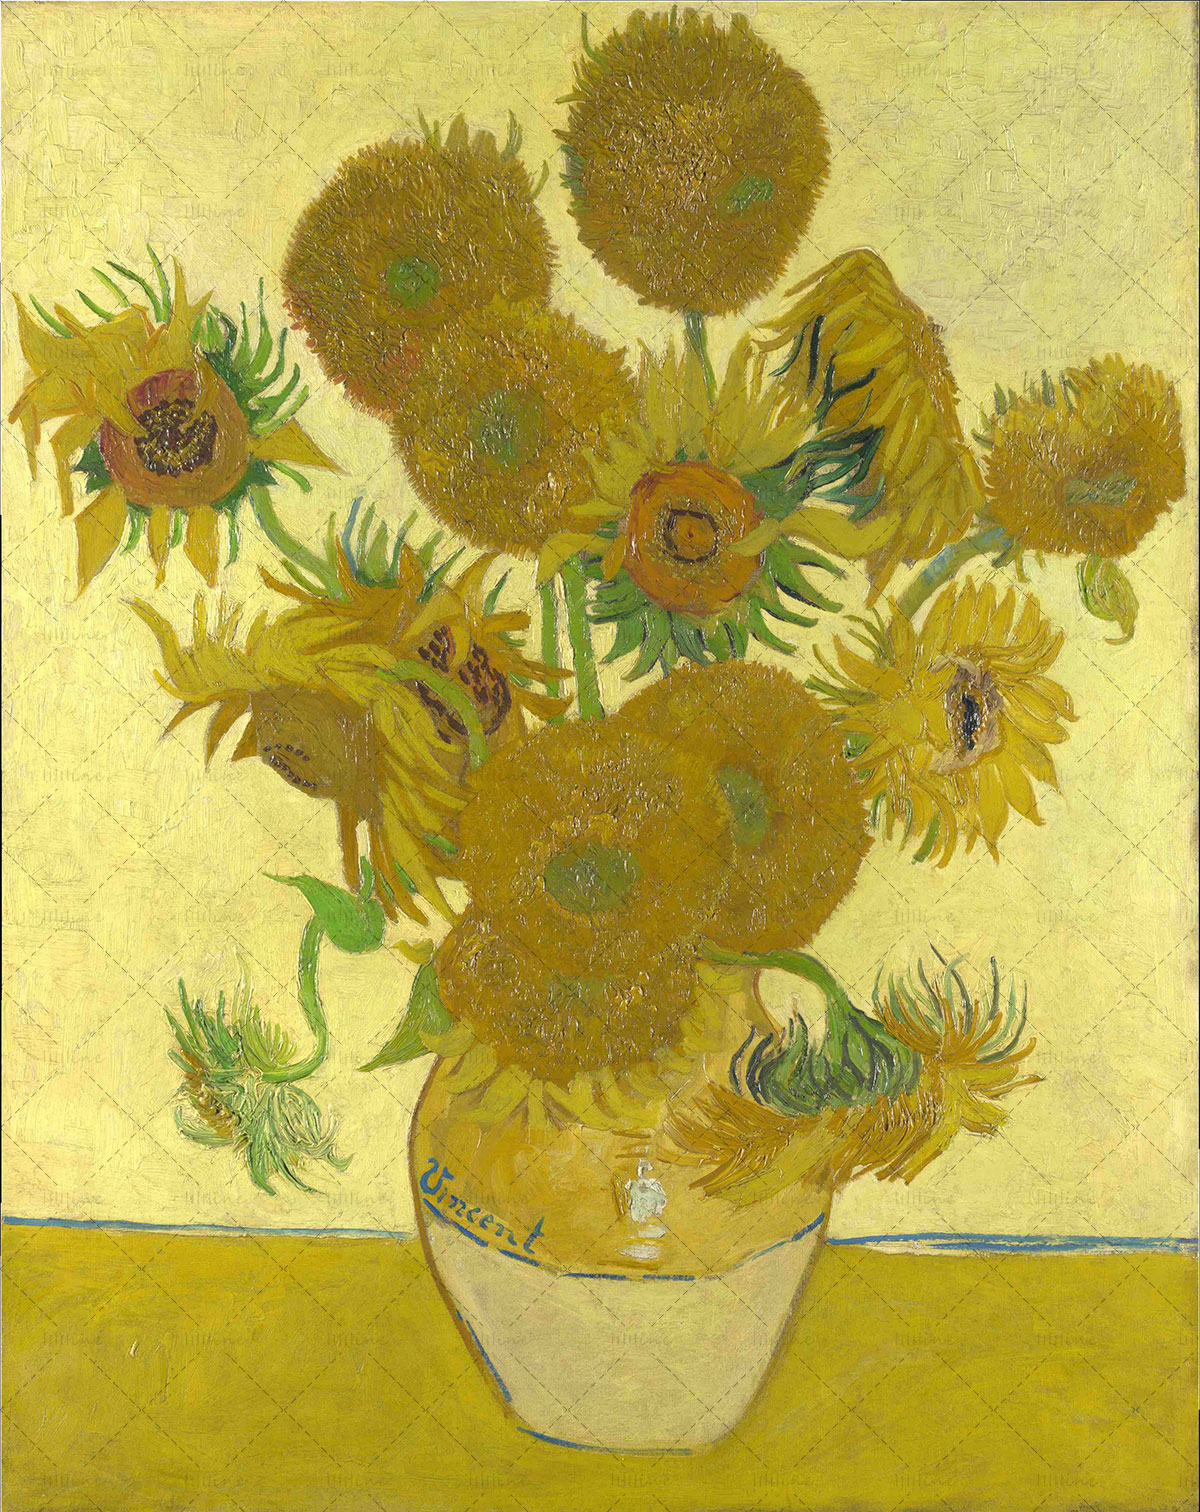 Pintura al óleo: Girasoles (1888) de Vincent van Gogh